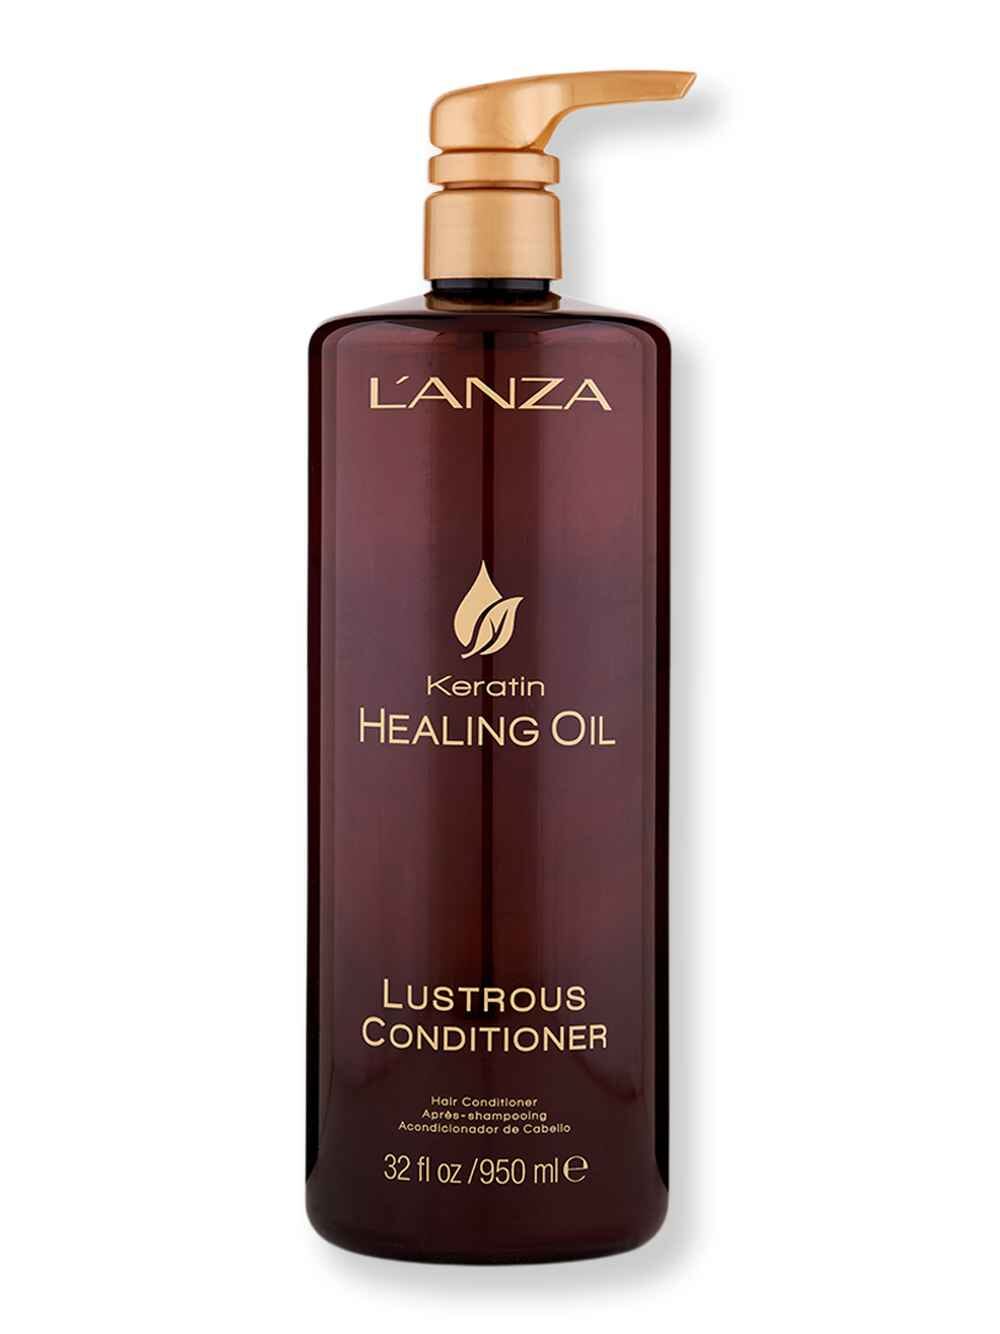 L'Anza L'Anza Keratin Healing Oil Lustrous Conditioner 1 L Conditioners 